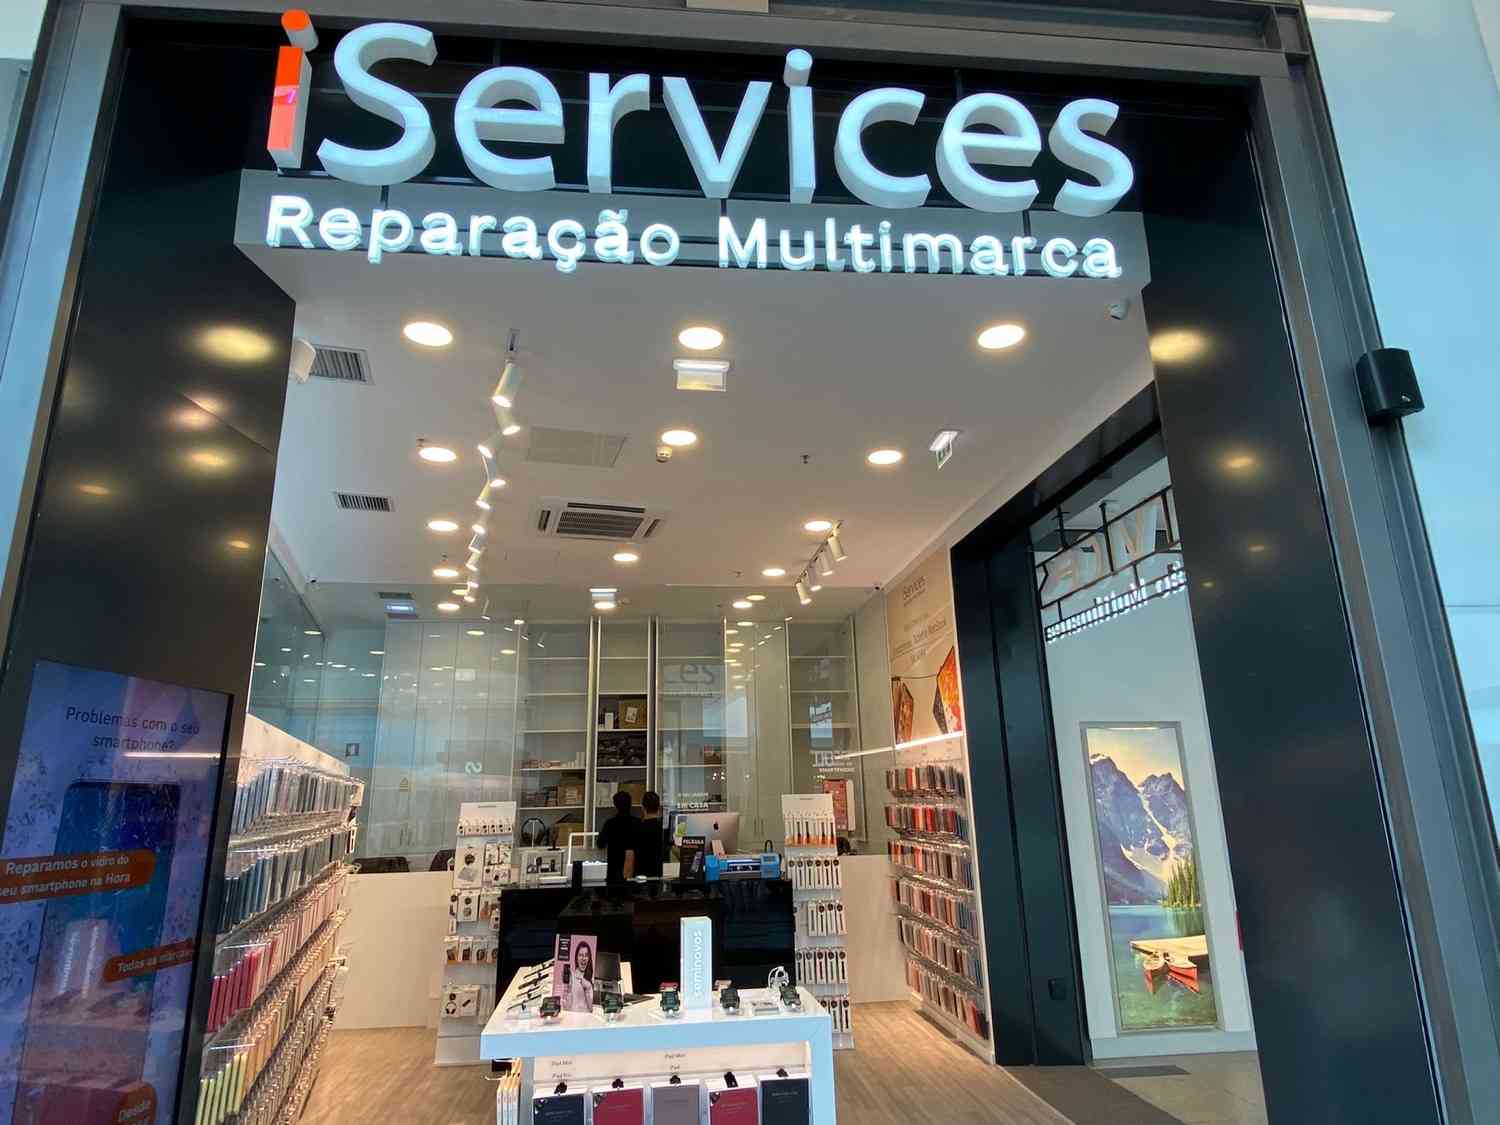 ¡Llegamos a Nuestro Centro Comercial! Abrimos iServices Vila Real